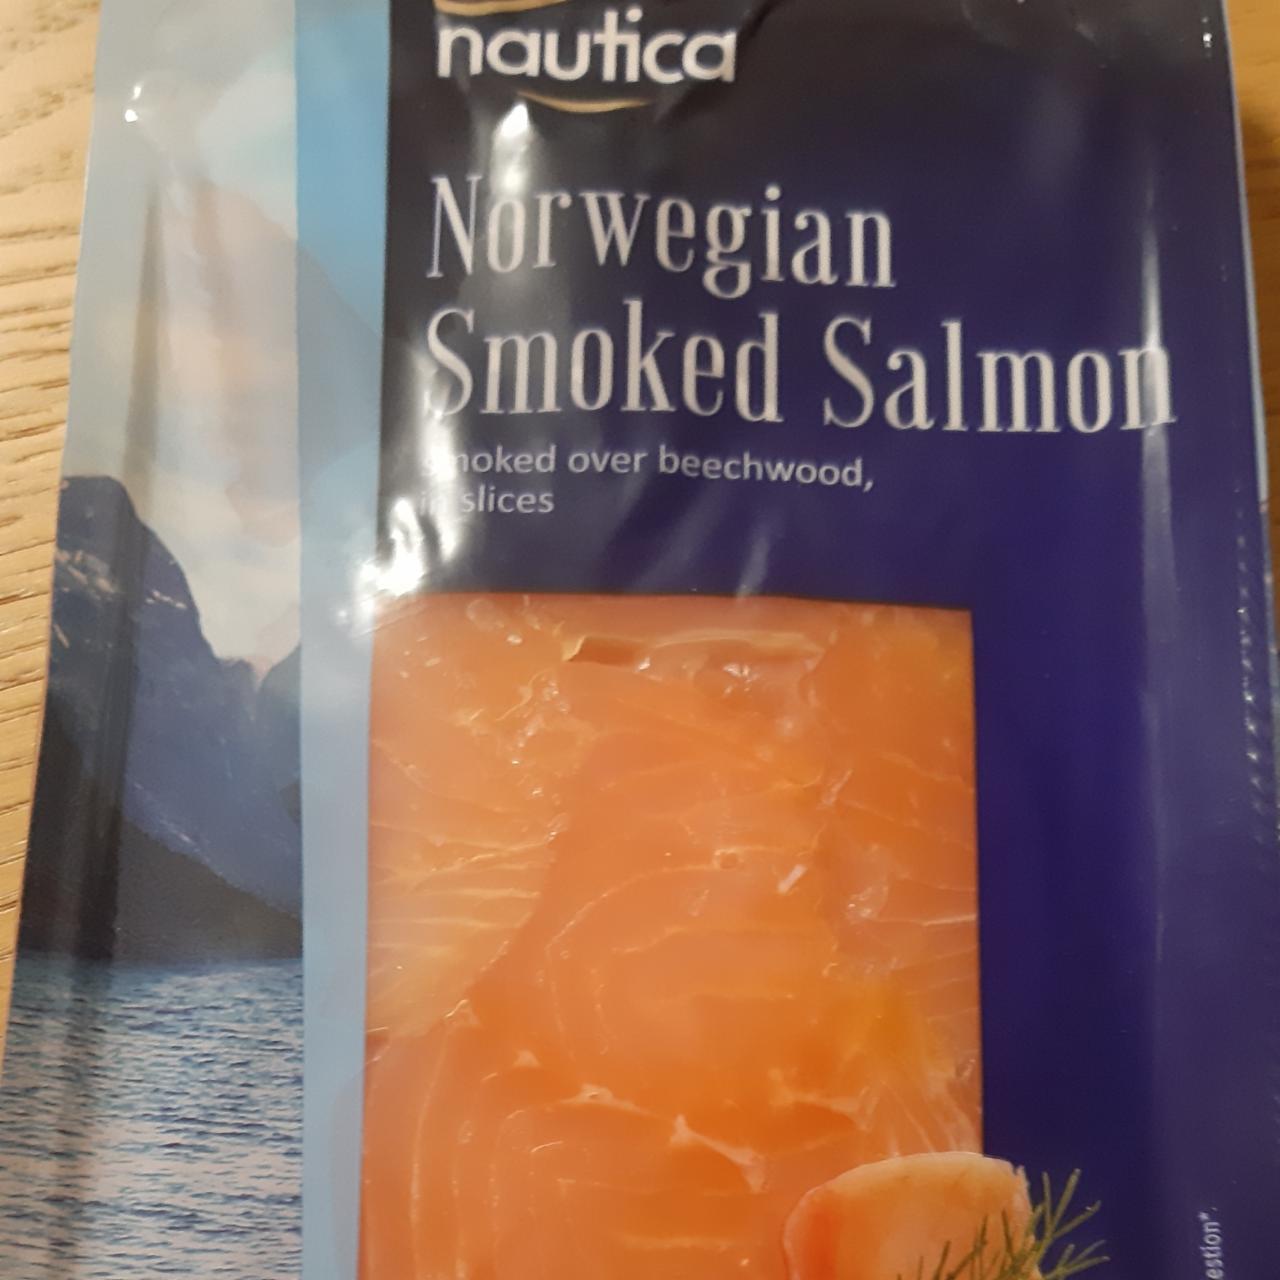 Fotografie - Norwegian Smoked Salmon Nautica